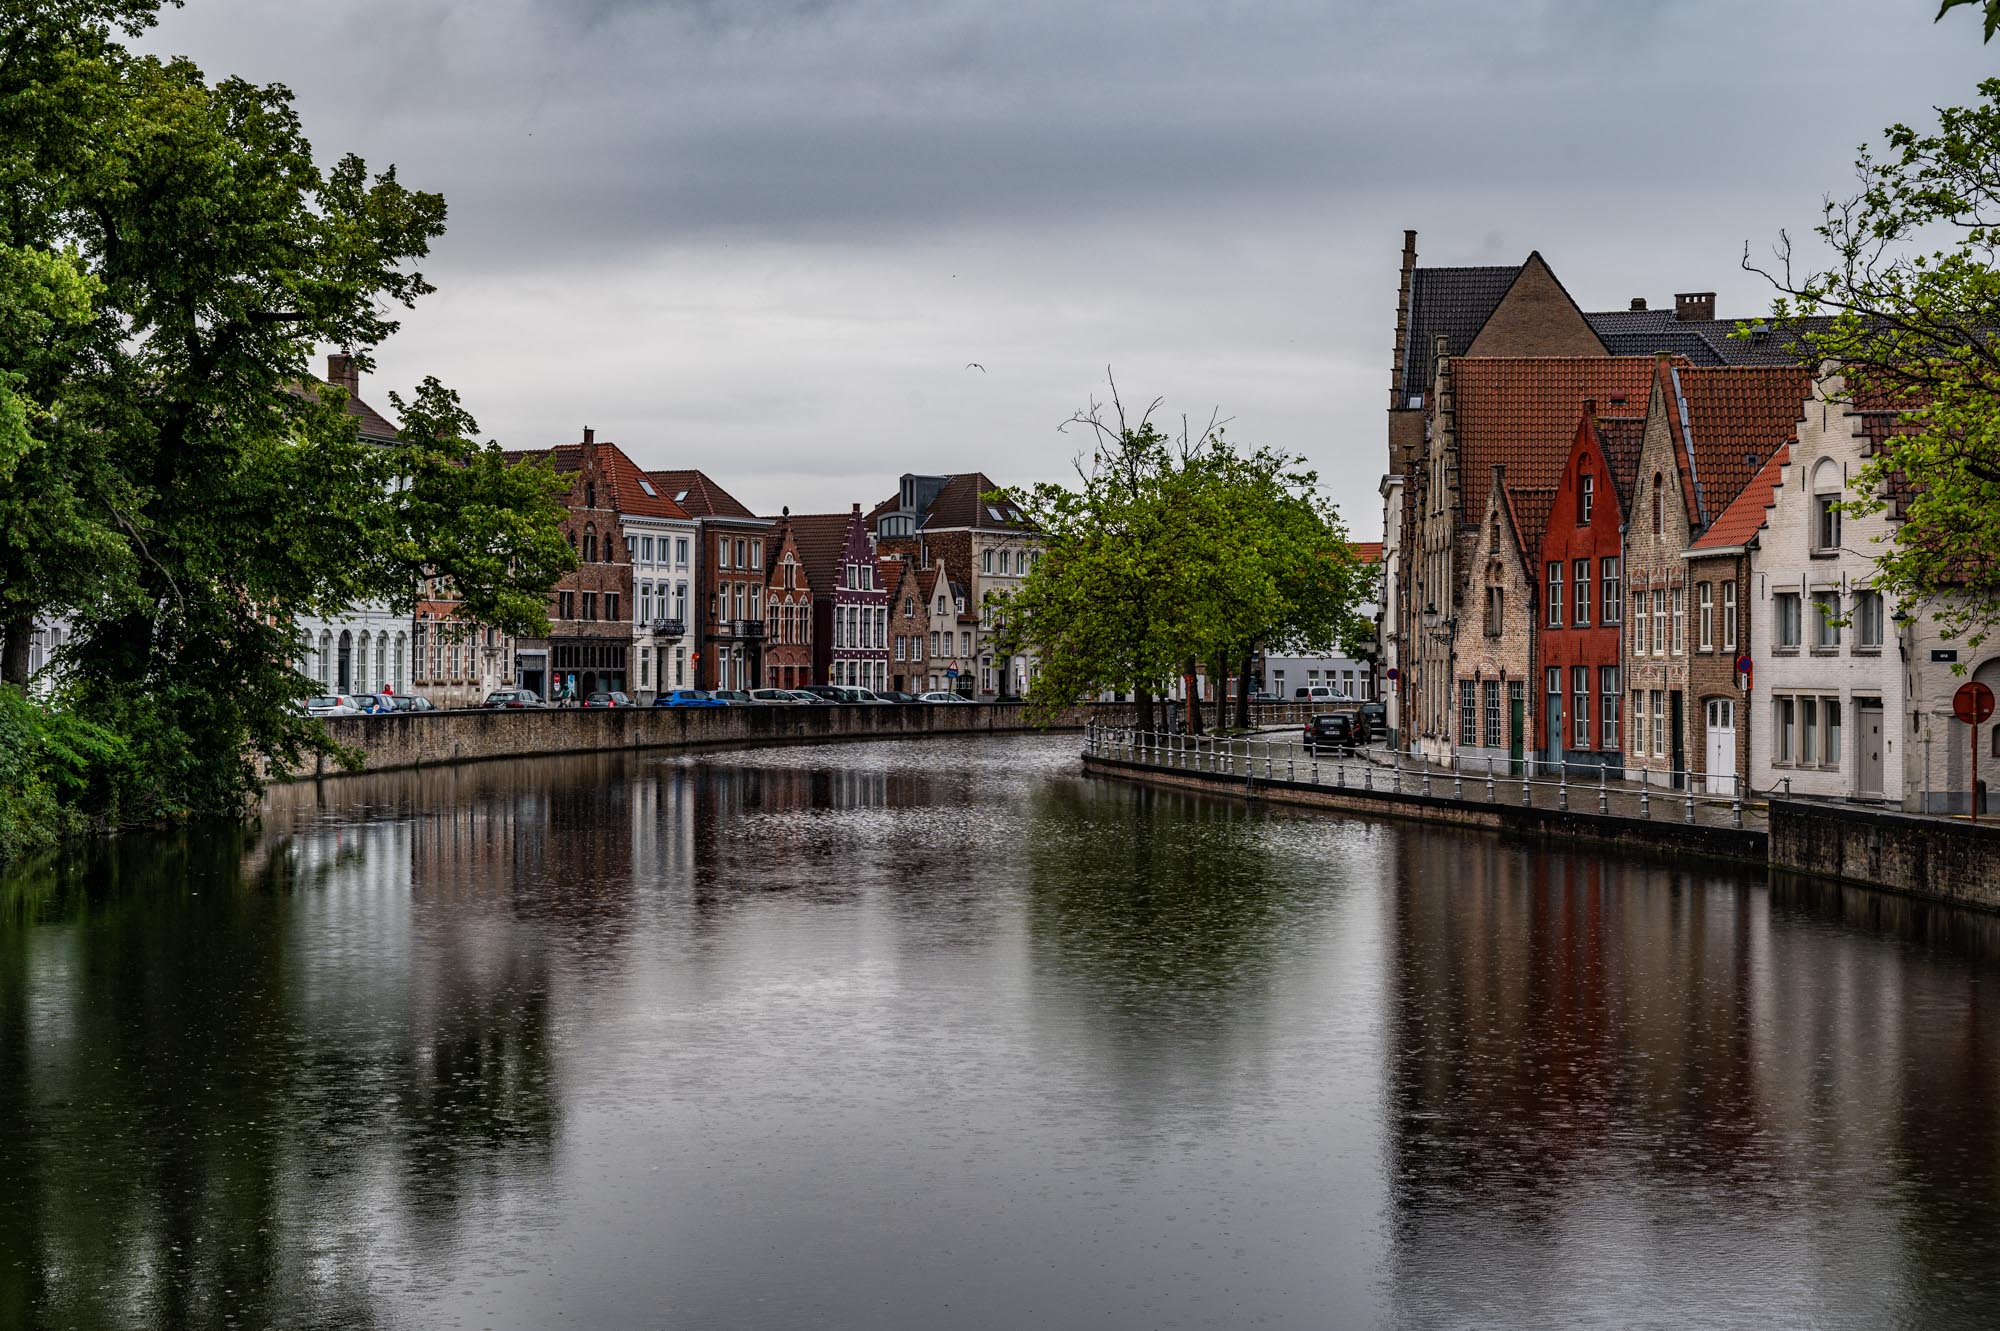 Bruges canal scene